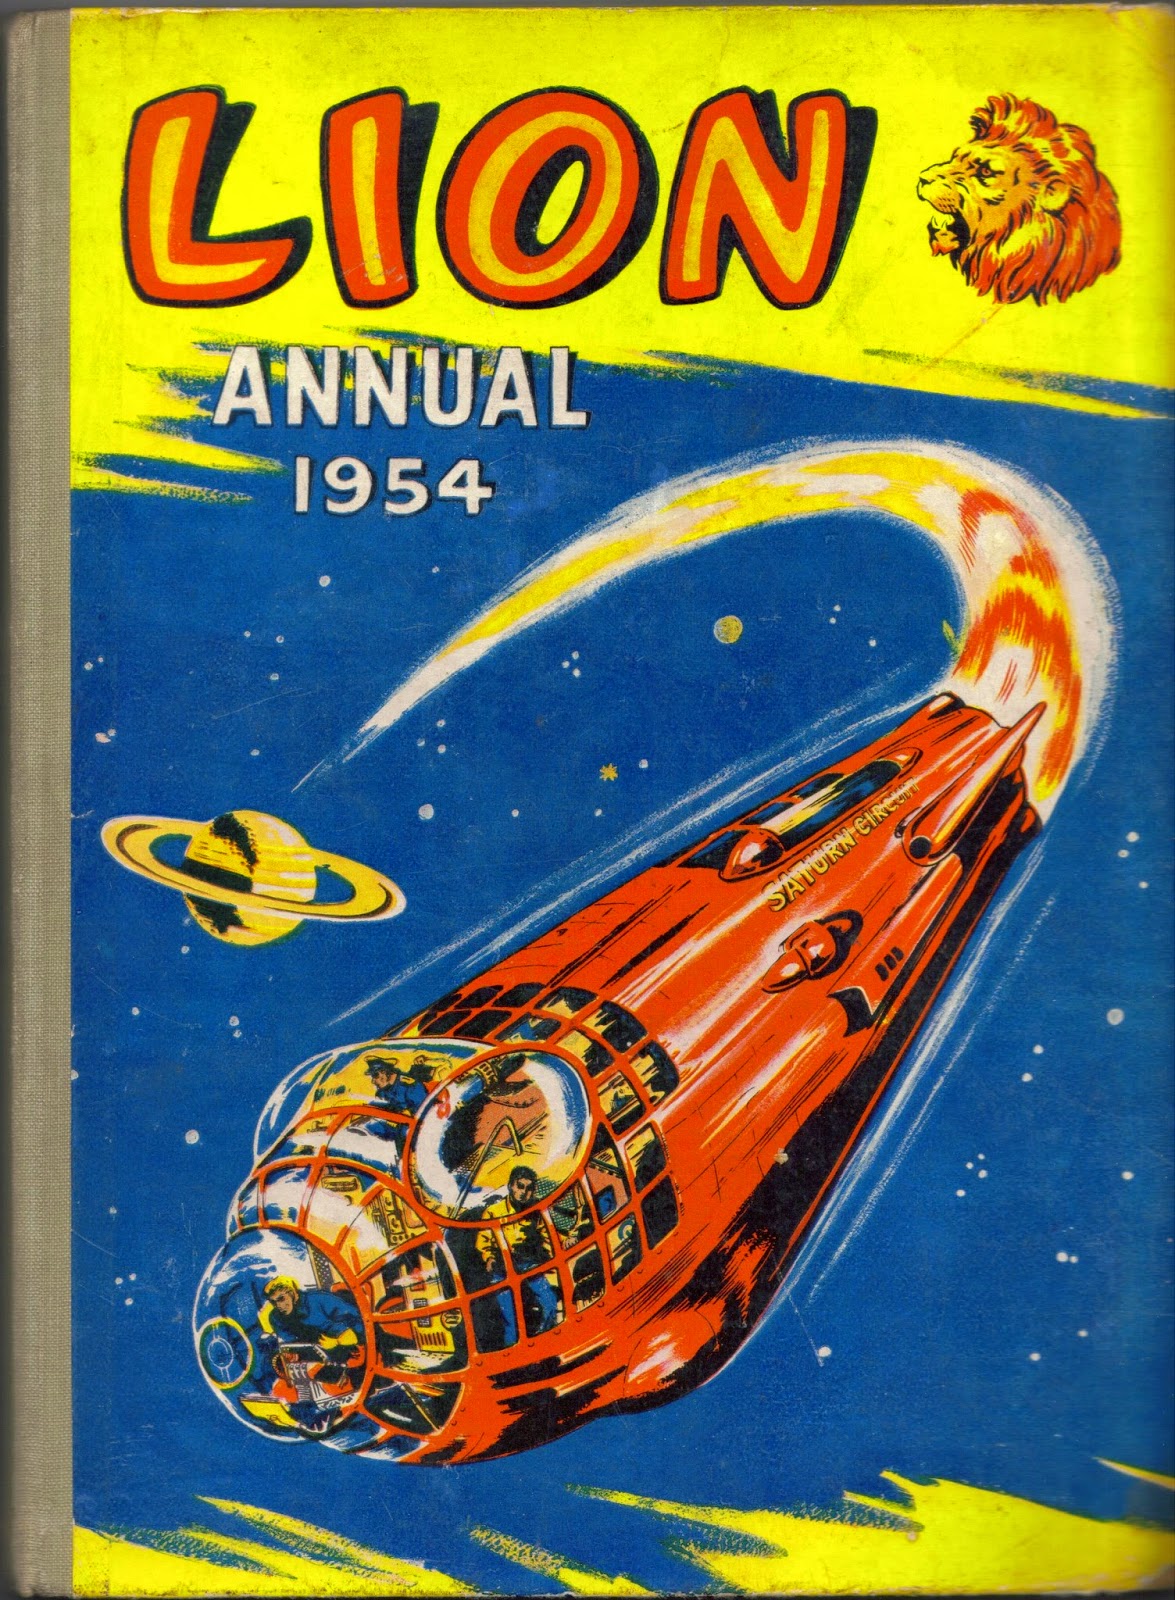 1954 Lion children's annual